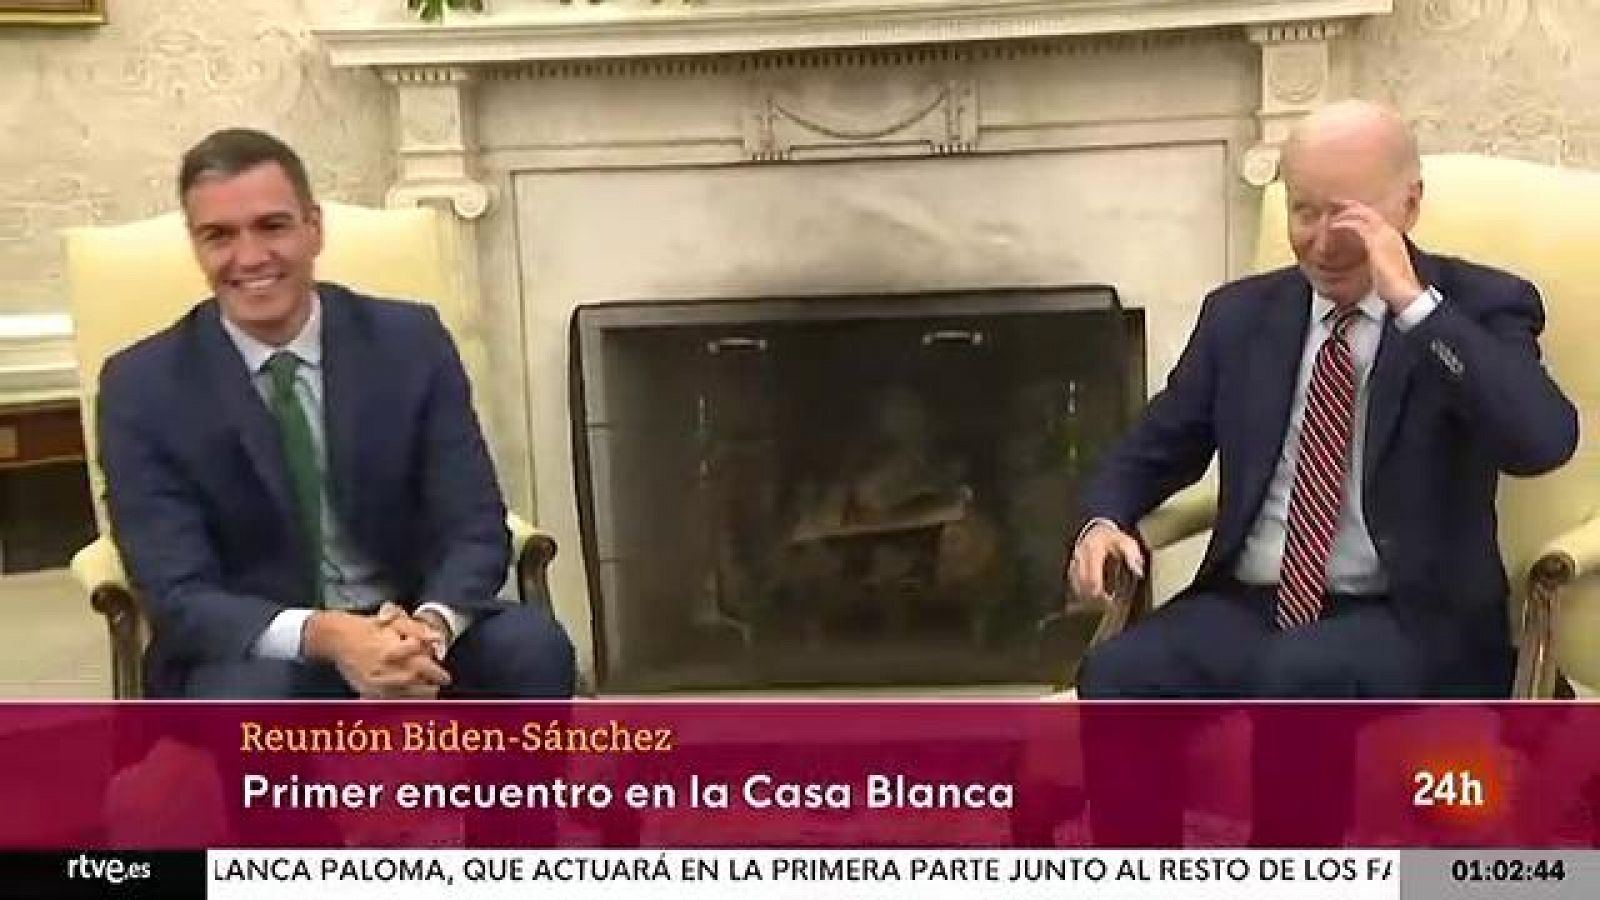 Biden agradece a Sánchez su "liderazgo" en la defensa de Ucrania y con la inmigración en su primera reunión en la Casa Blanca